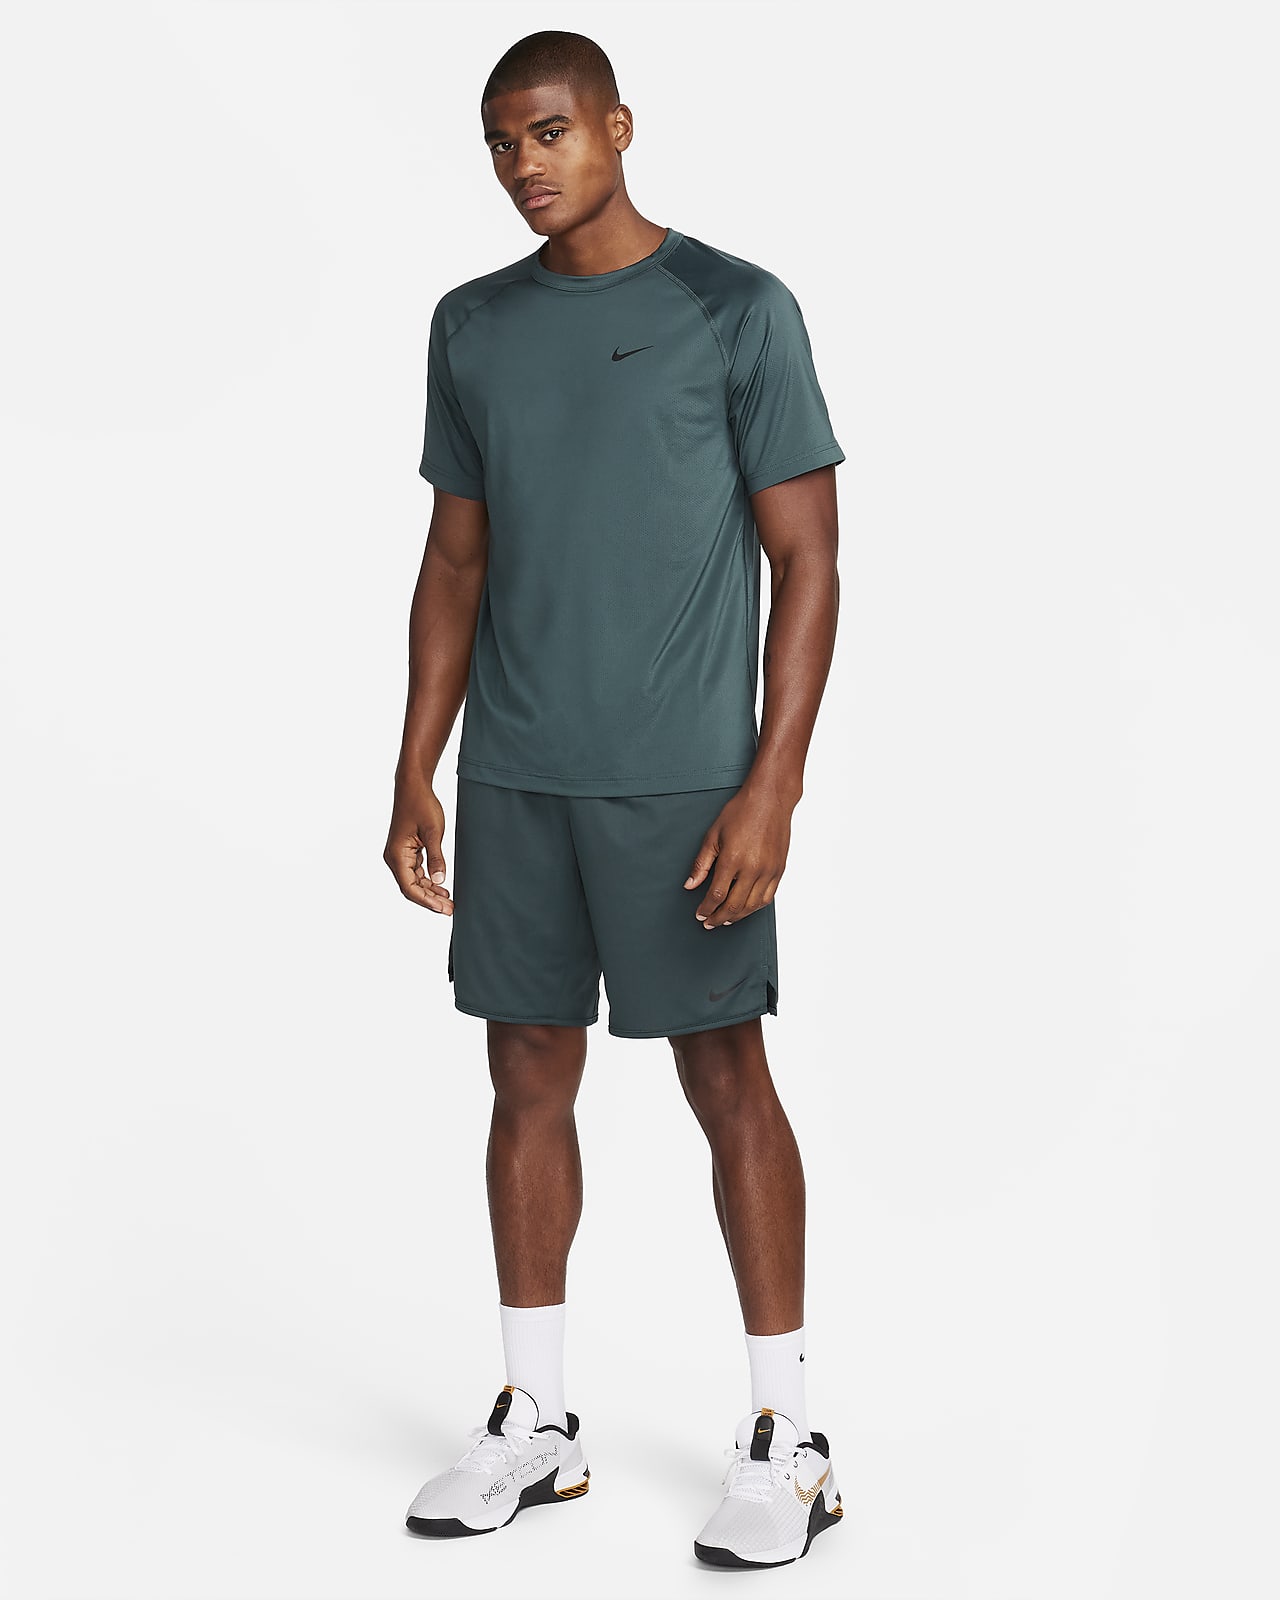 Hauts et T-shirts de Fitness pour Homme. Nike FR